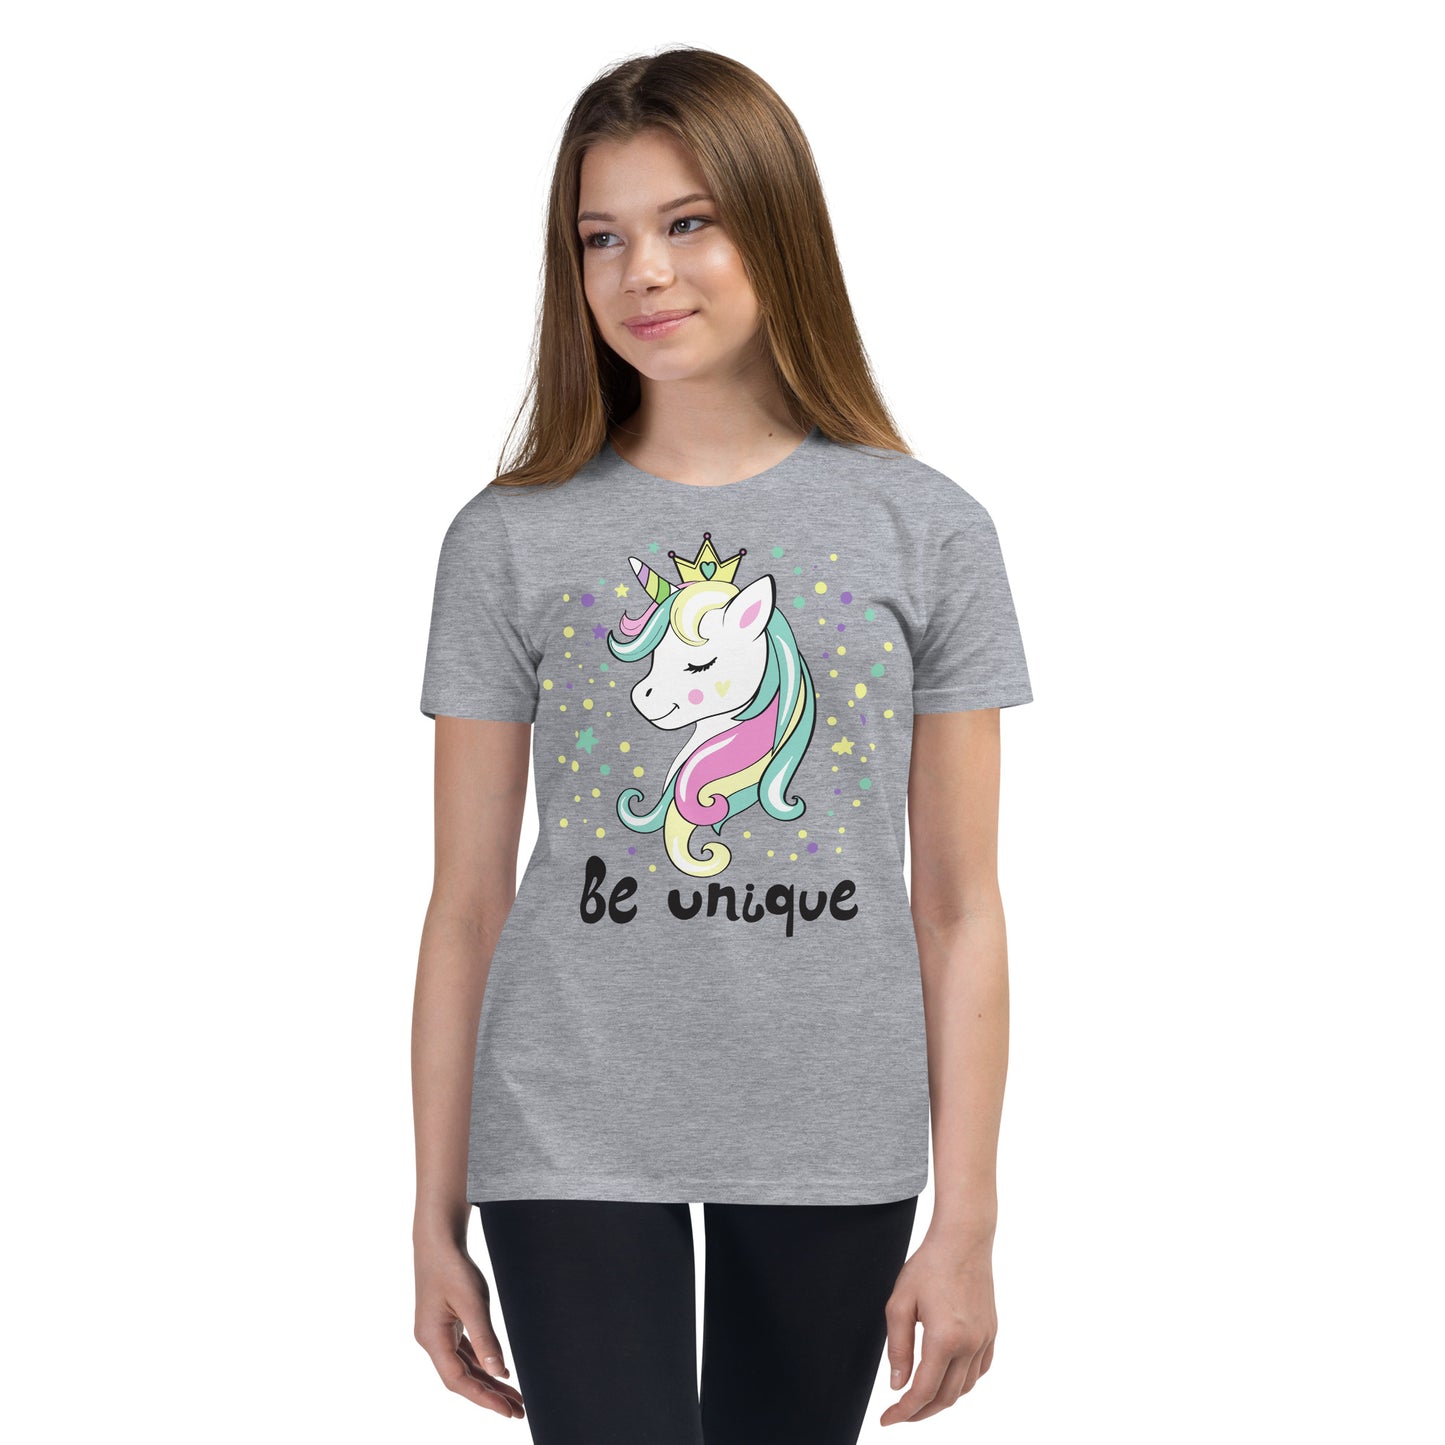 Be Unique Unicorn Girl's T-Shirt